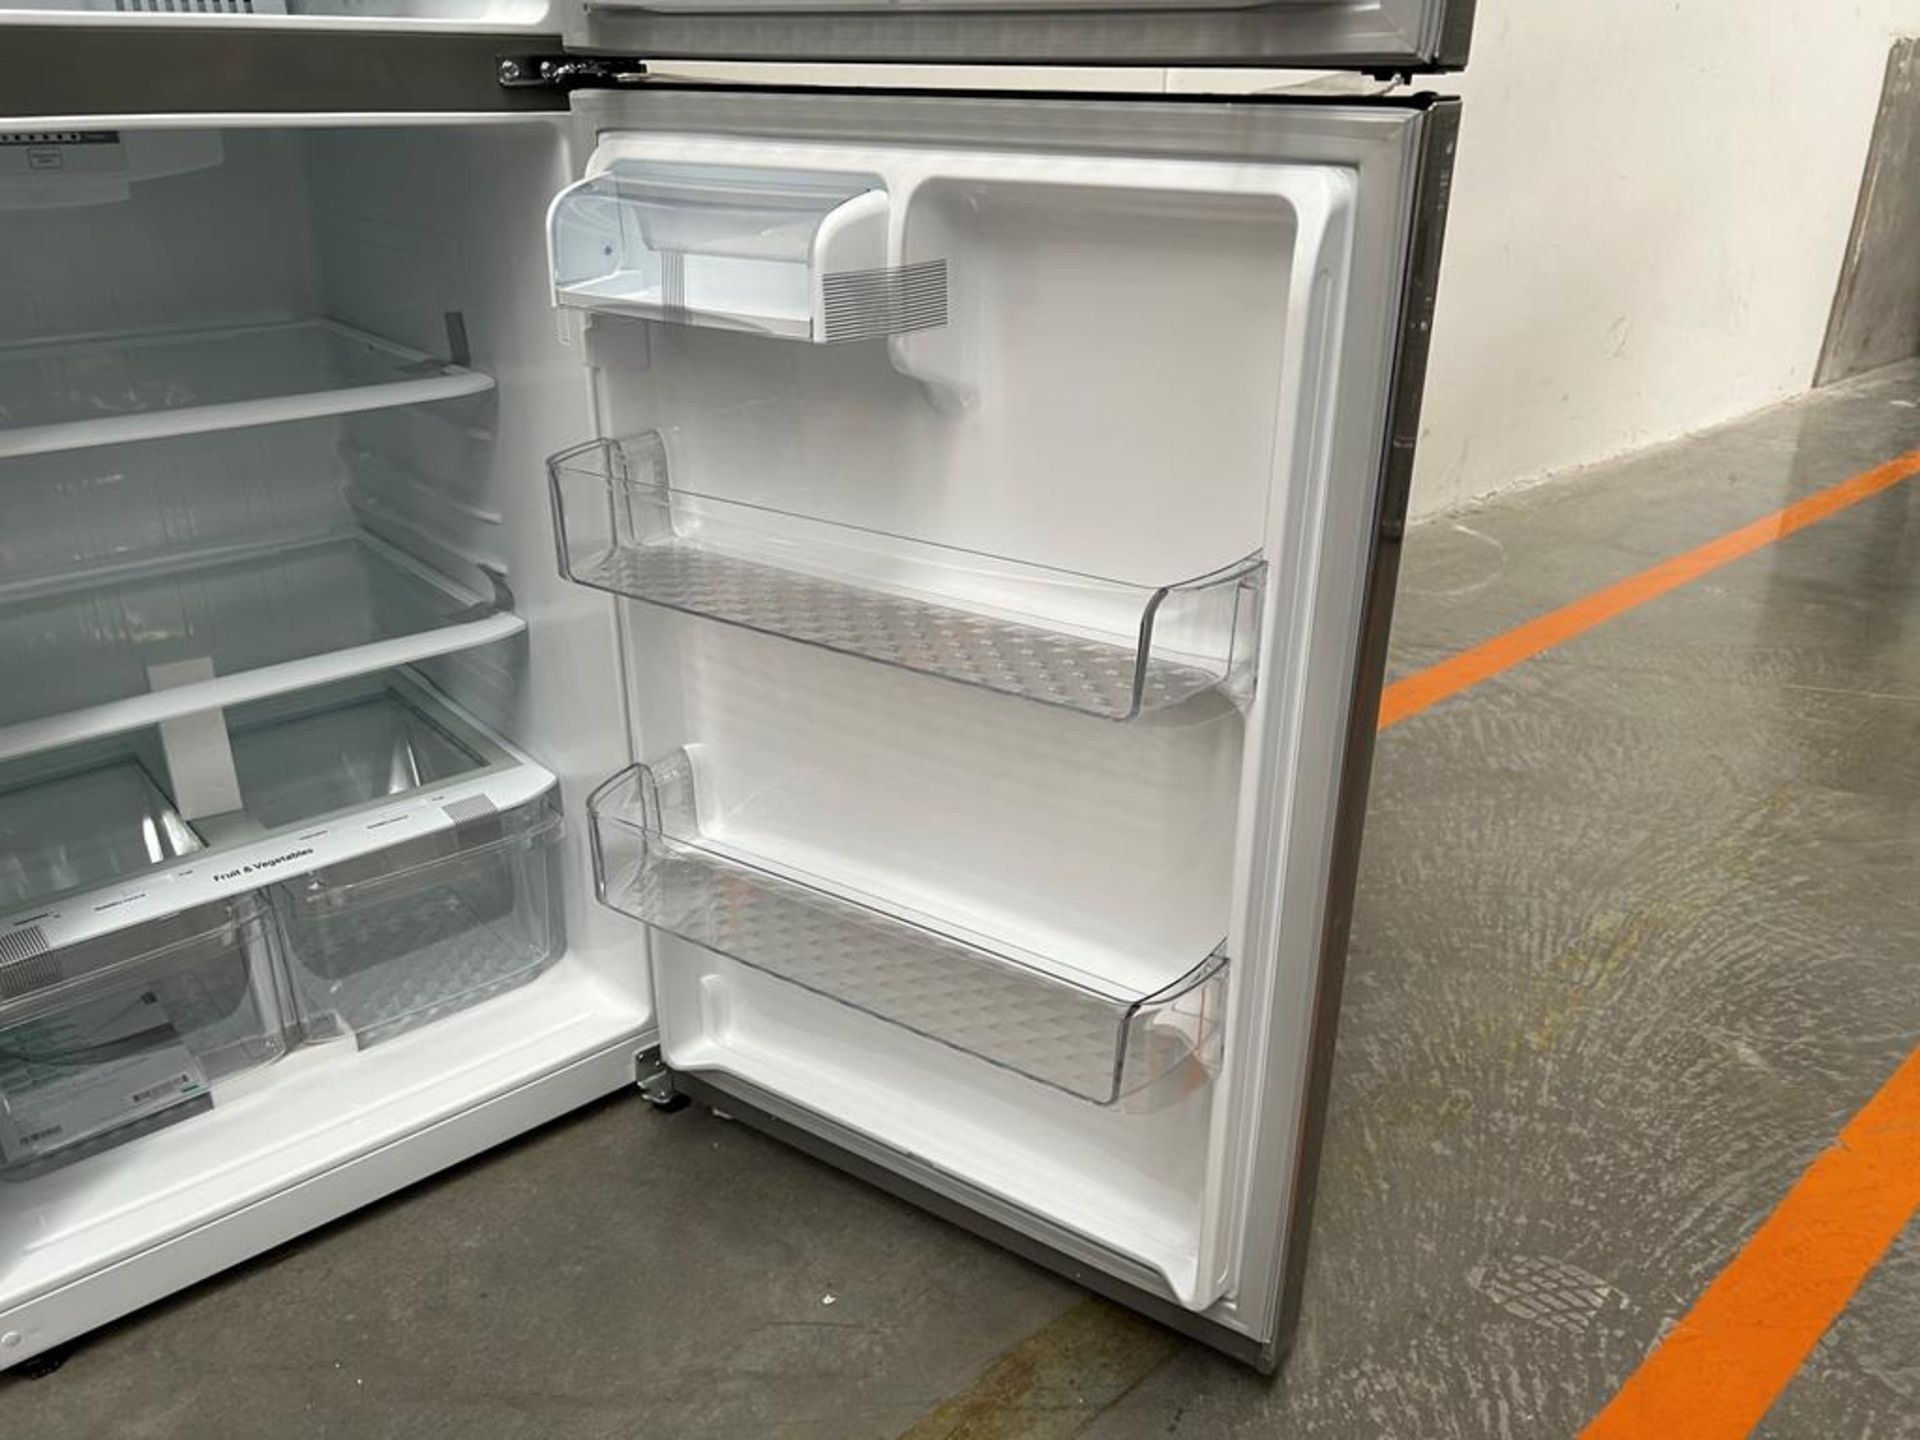 (NUEVO) Refrigerador Marca LG, Modelo LT57BPSX, Serie D1X339, Color GRIS - Image 7 of 11